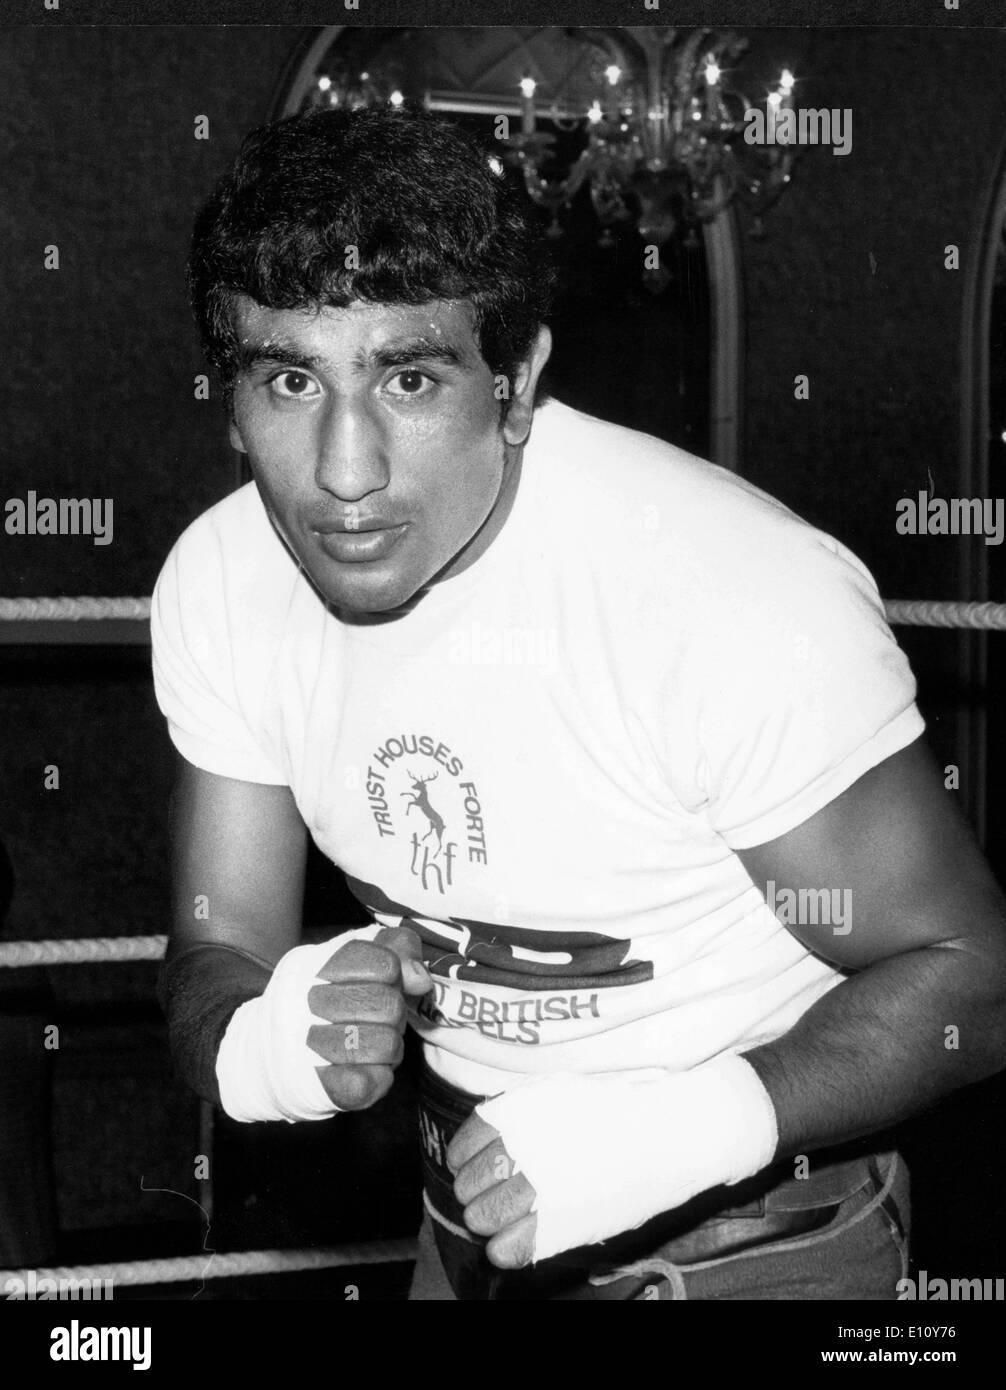 Boxeur argentin, Jorge AHUMADA, les entraîner dans le Café Royal. Banque D'Images